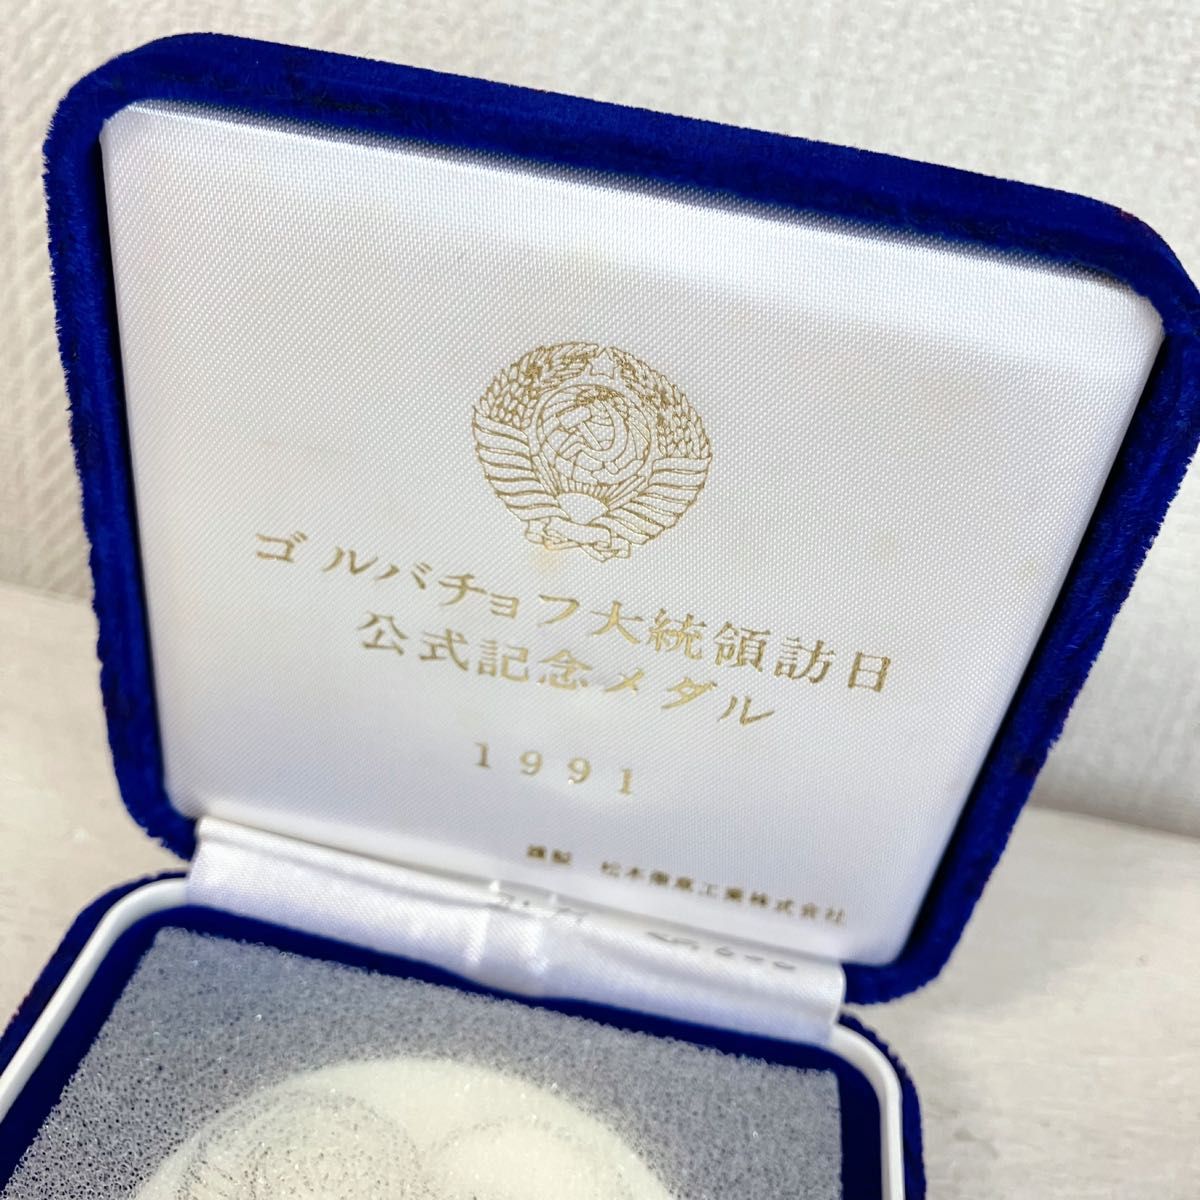 松本徽章工業 純銀メダル ゴルバチョフ大統領訪日 記念メダル